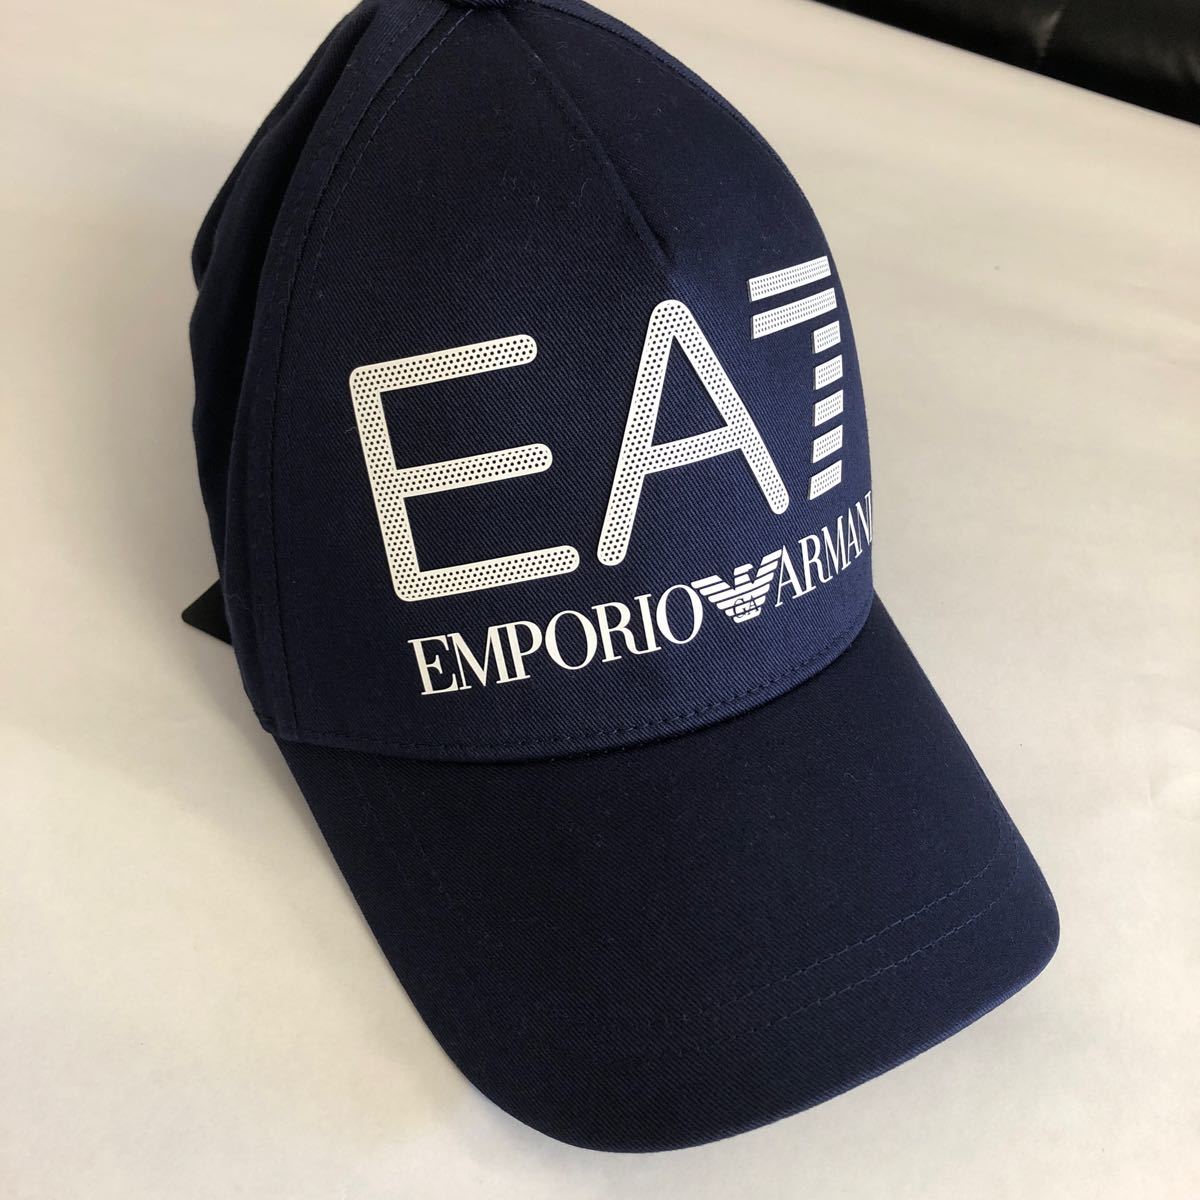 【送料無料 新品】 エンポリオ アルマーニ EMPORIO ARMANI キャップ ネイビー 帽子 キャップ 黒紺